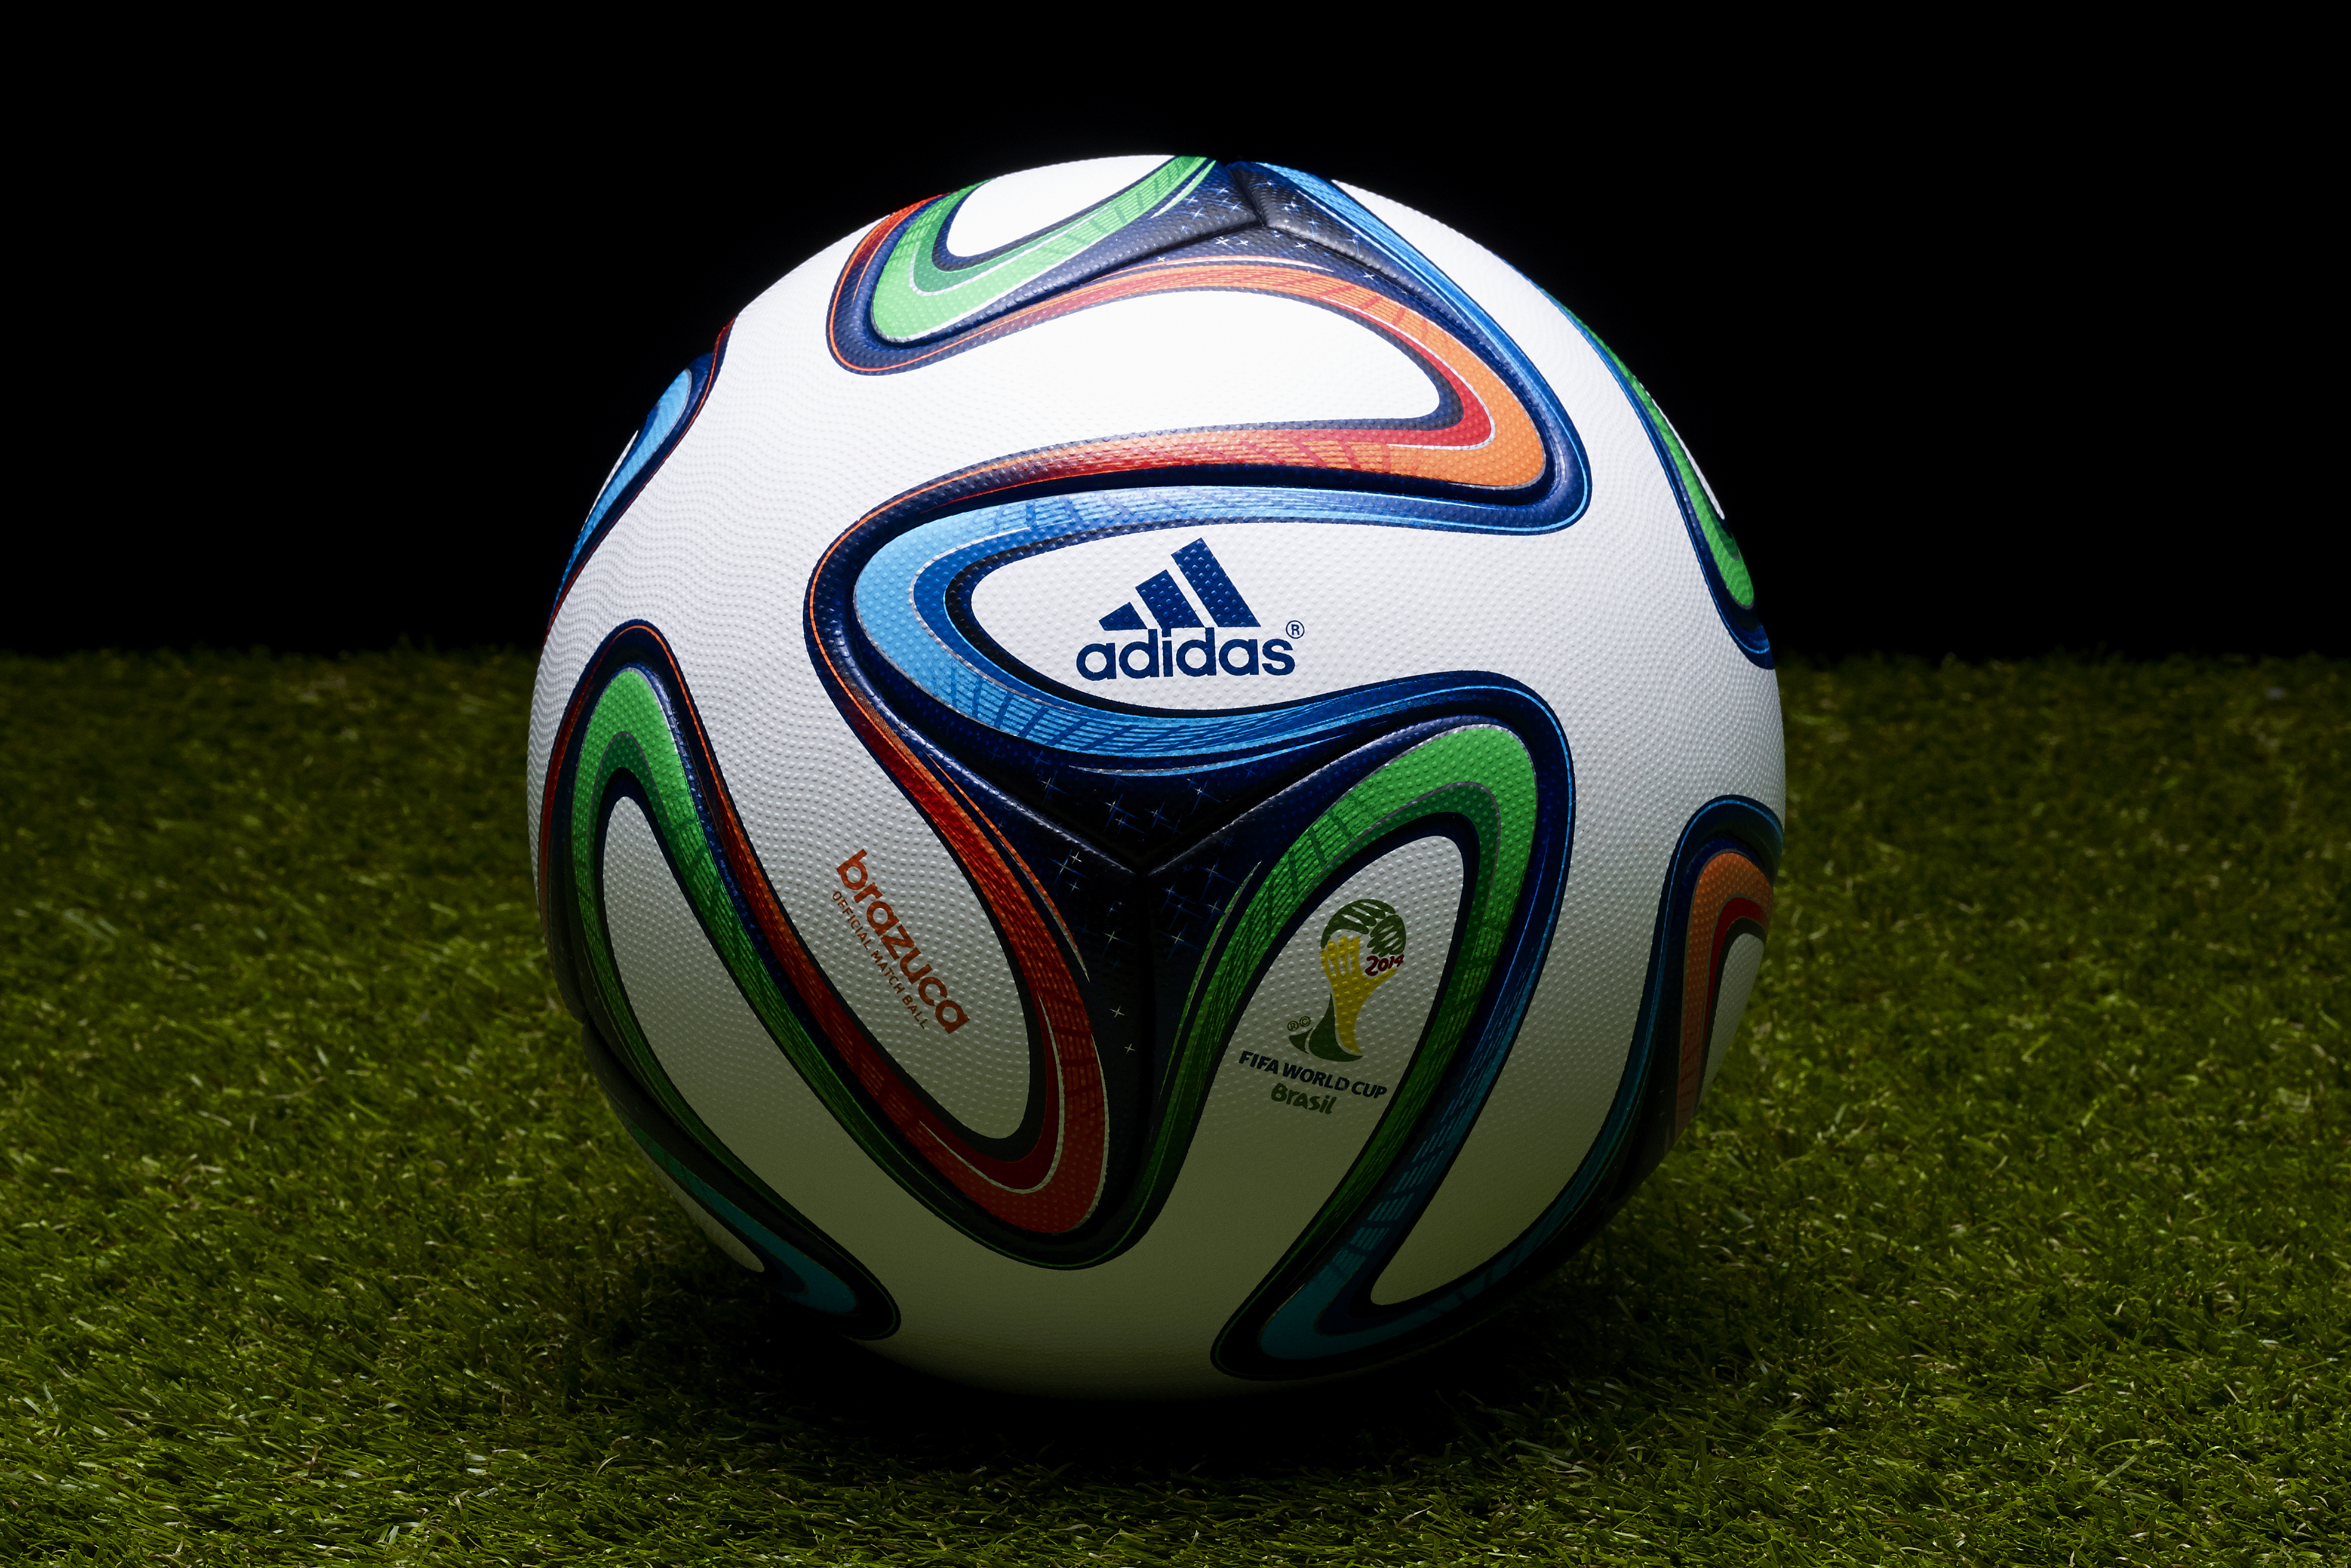 Физики протестировали футбольный мяч грядущего чемпионата мира